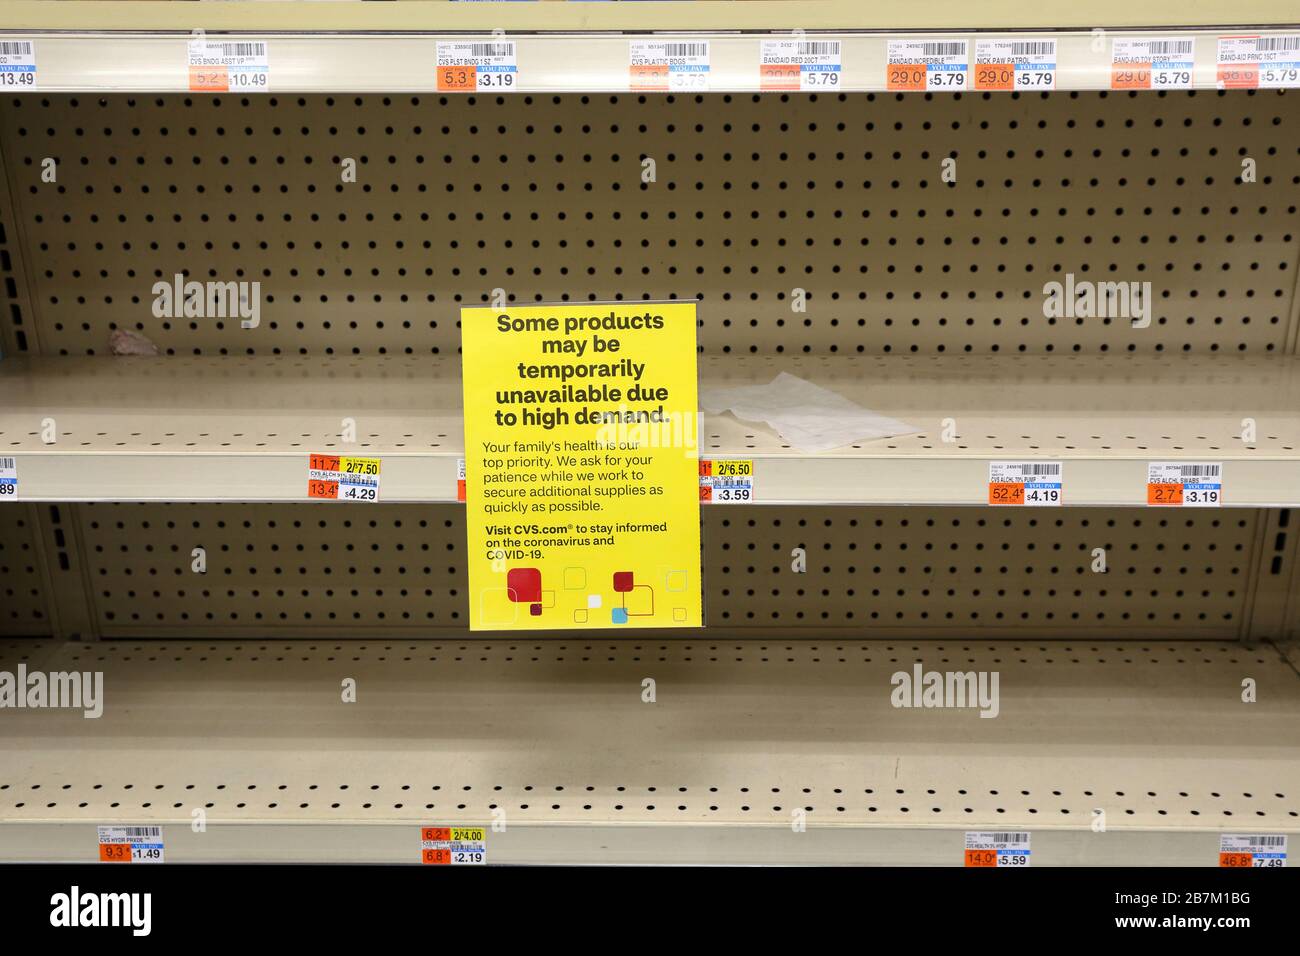 Un signe d'avertissement de non-disponibilité du produit se trouve sur une étagère vidée d'alcool isopropylique et de bandages dans un magasin de médicaments de la chaîne de New York, le 16 mars 2020 Banque D'Images